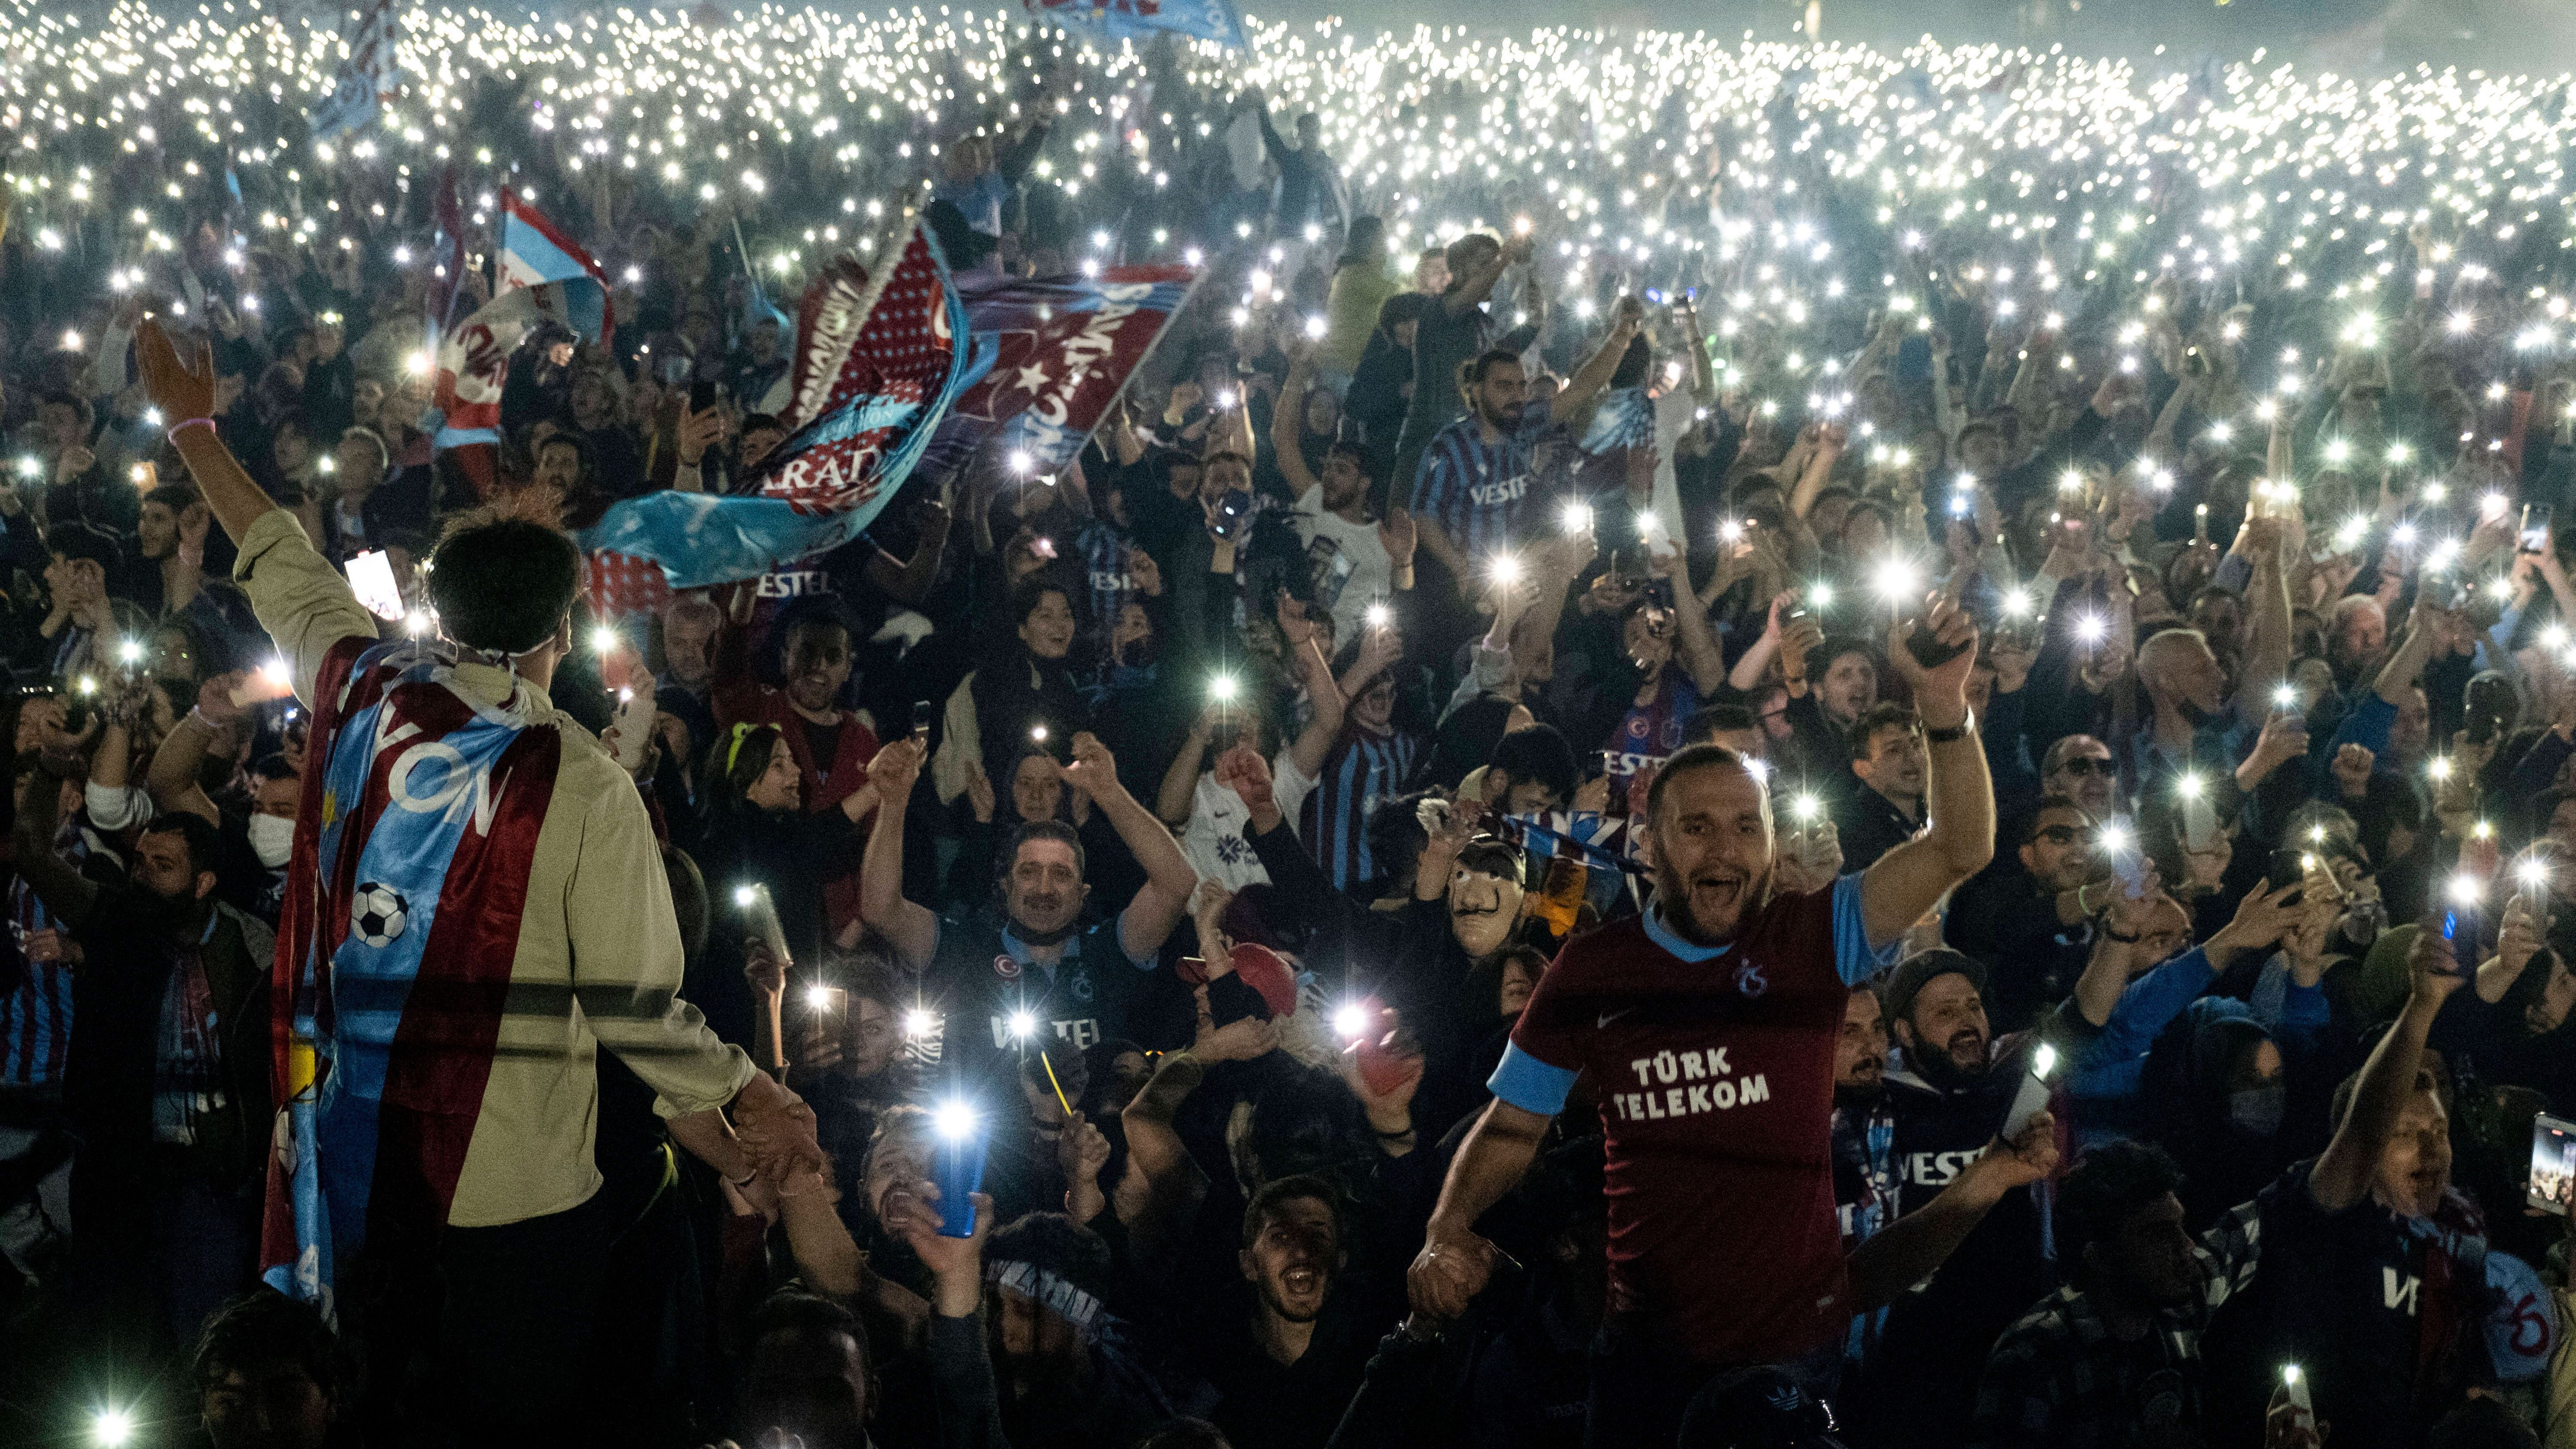 <strong>Trabzonspor: Türkischer Meister 2022</strong><br>Für viele Fans war es die erste Meisterschaft ihres Klubs in ihrem Leben. Entsprechend ekstatisch feierten sie den Triumph. Etwa 800.000 Fans zogen in einem beeindruckenden Lichtermeer durch die Stadt und sorgten für eine außergewöhnliche Atmosphäre.